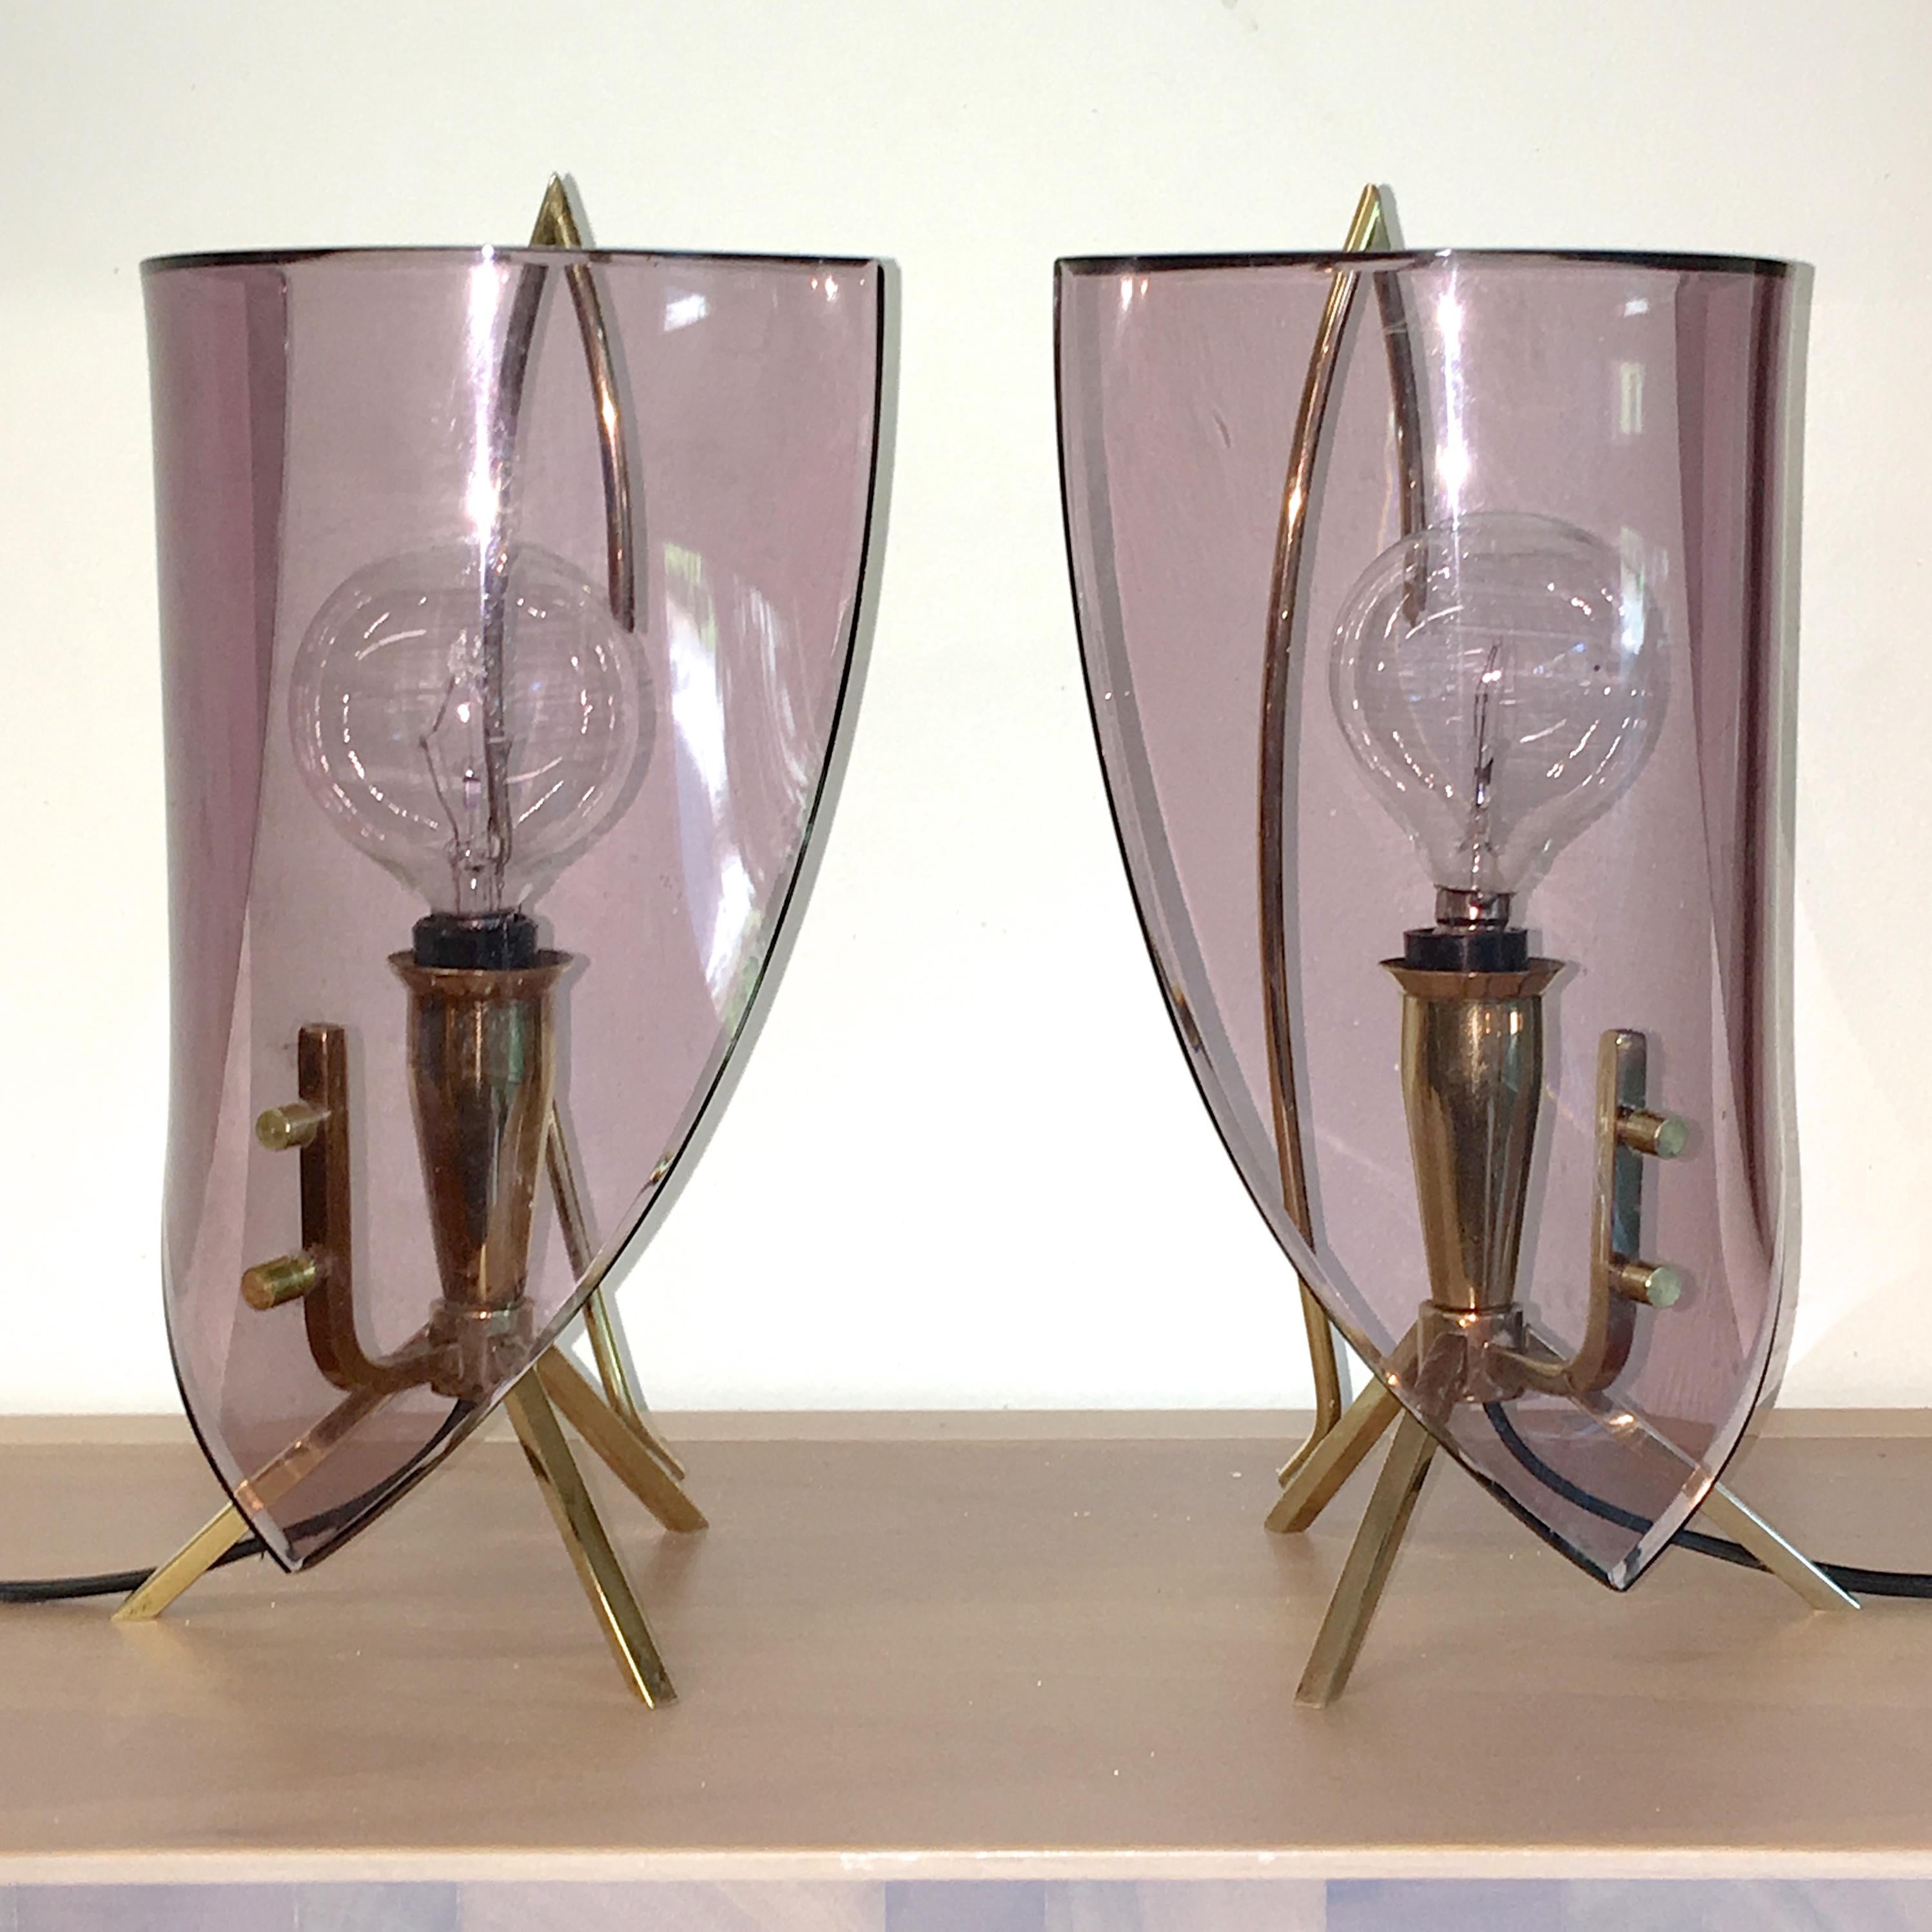 Paire de lampes de chevet italiennes des années 1950 produites par Stilux Milano et attribuées au designer Oscar Torlasco. 

Structure moderniste en laiton massif, semblable à un chandelier, avec des pieds tripodes et une seule ampoule candélabre